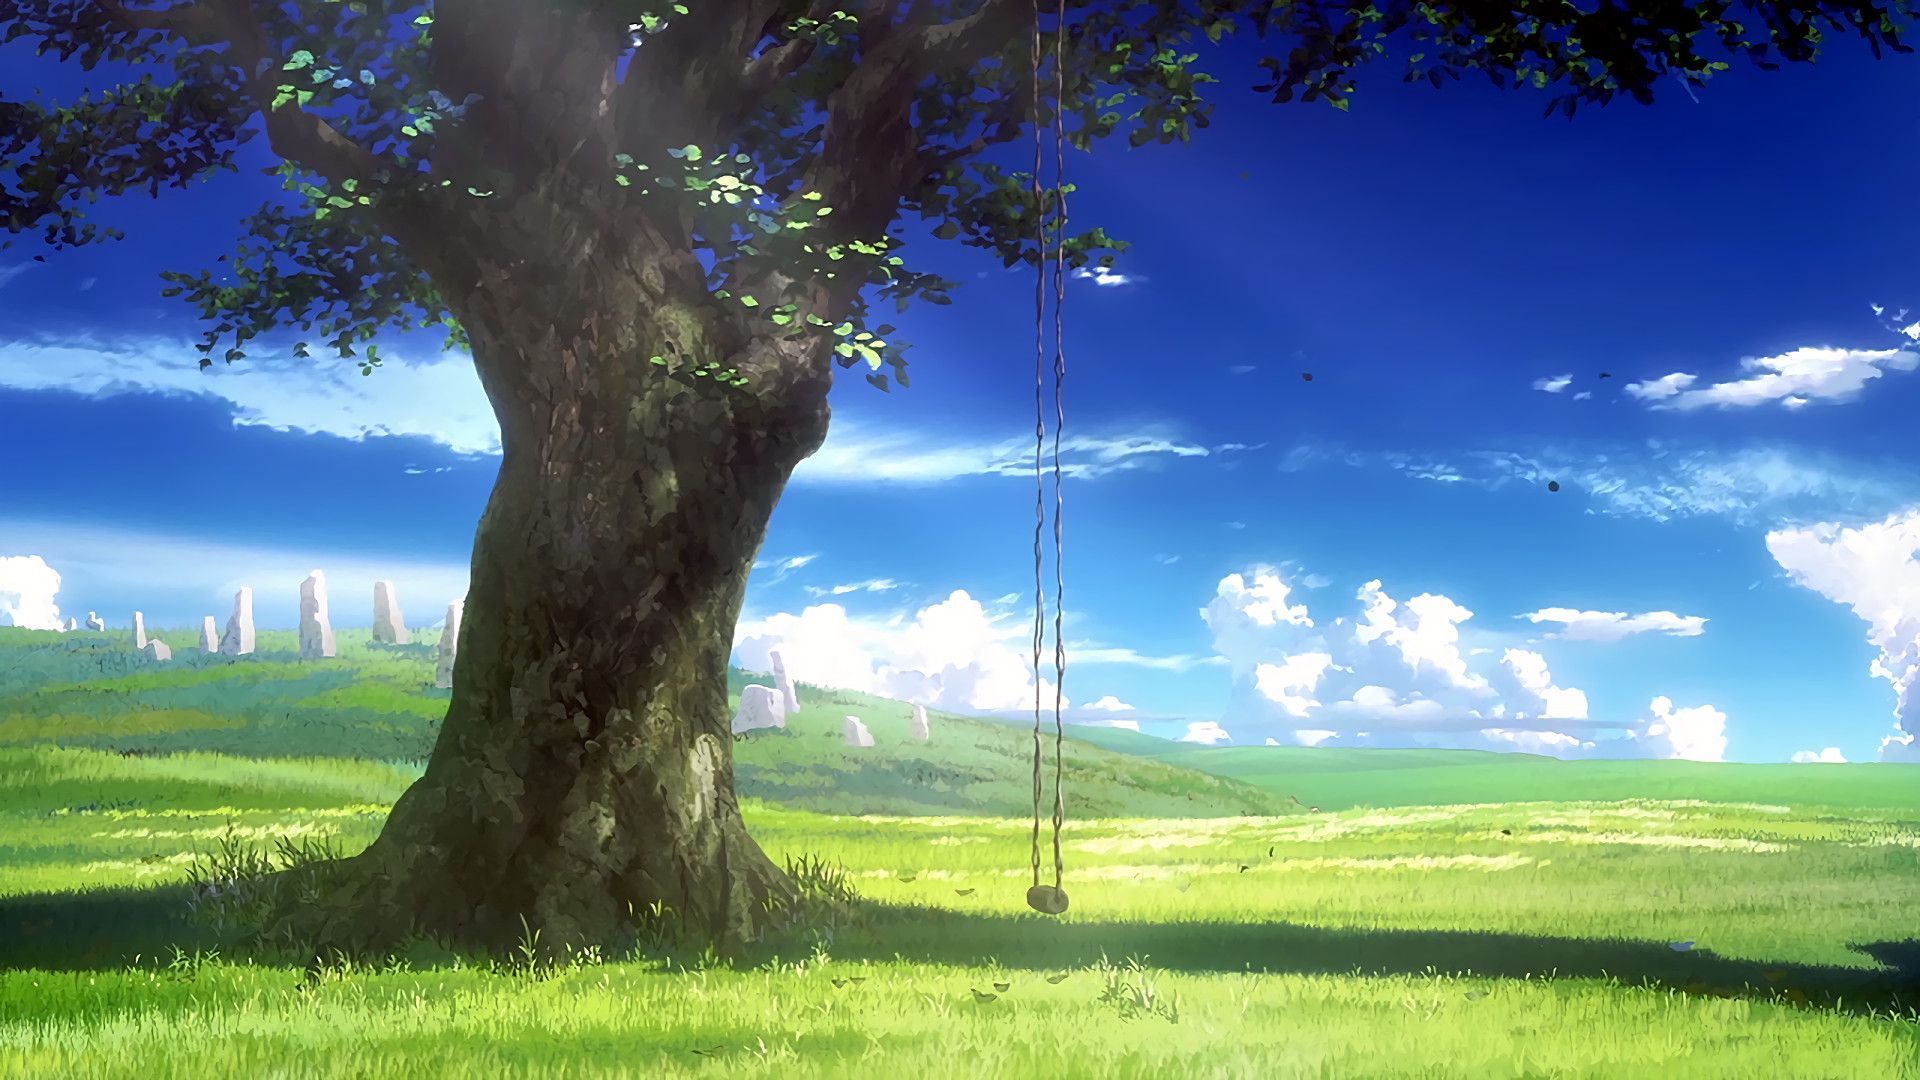 Bnha preferences. Anime scenery, Anime background wallpaper, Anime scenery wallpaper